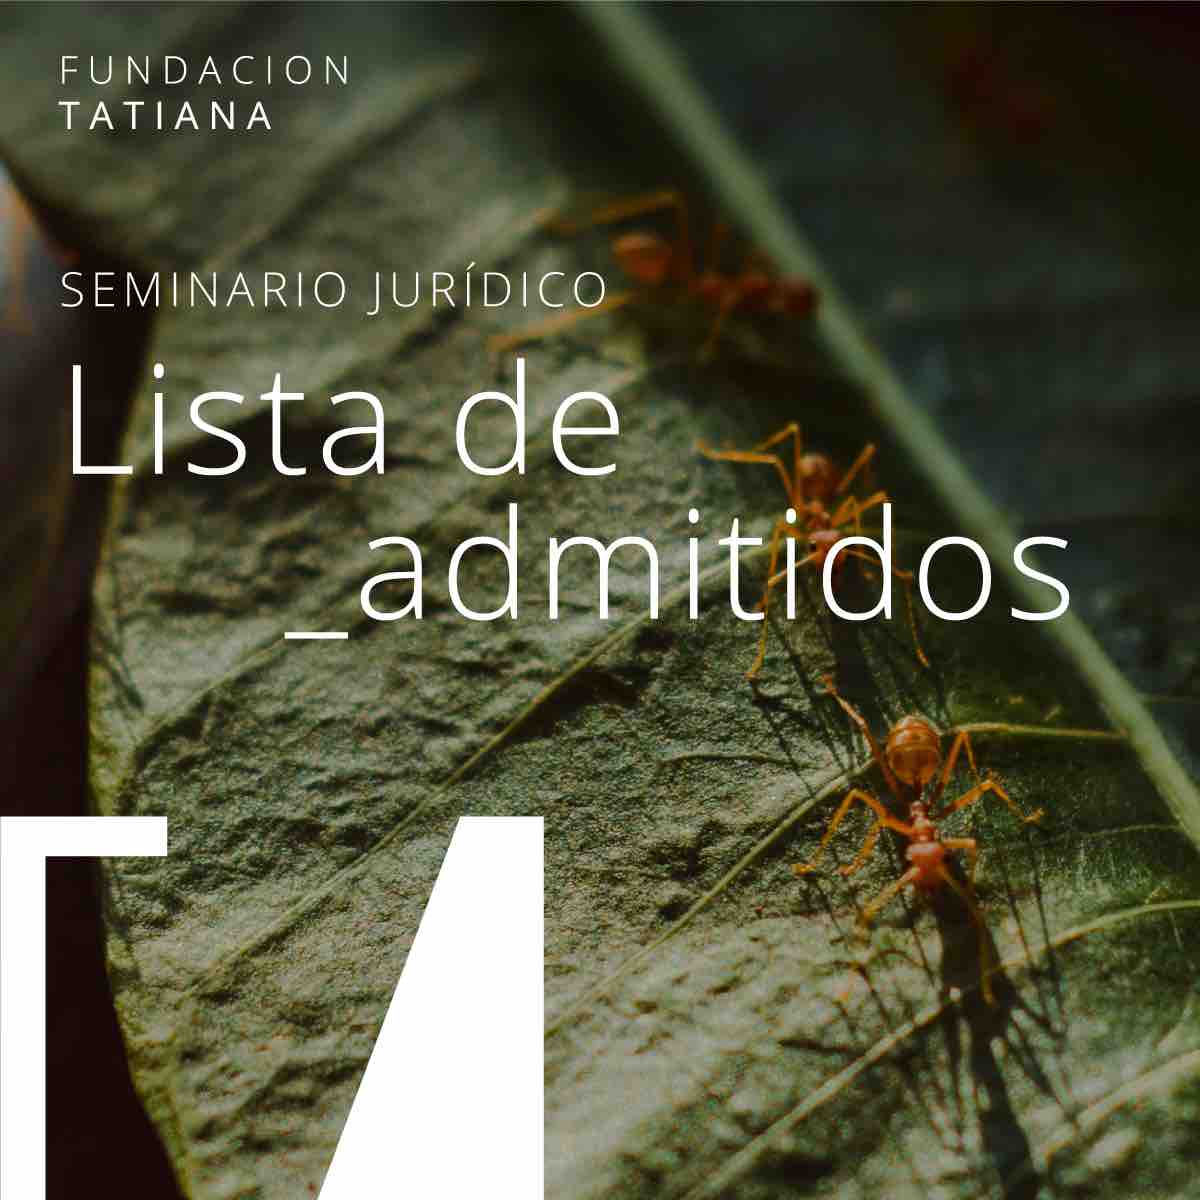 Disponible en la web: fundaciontatiana.com/programa/del-e… #FundacionTatiana #FundaTuVida